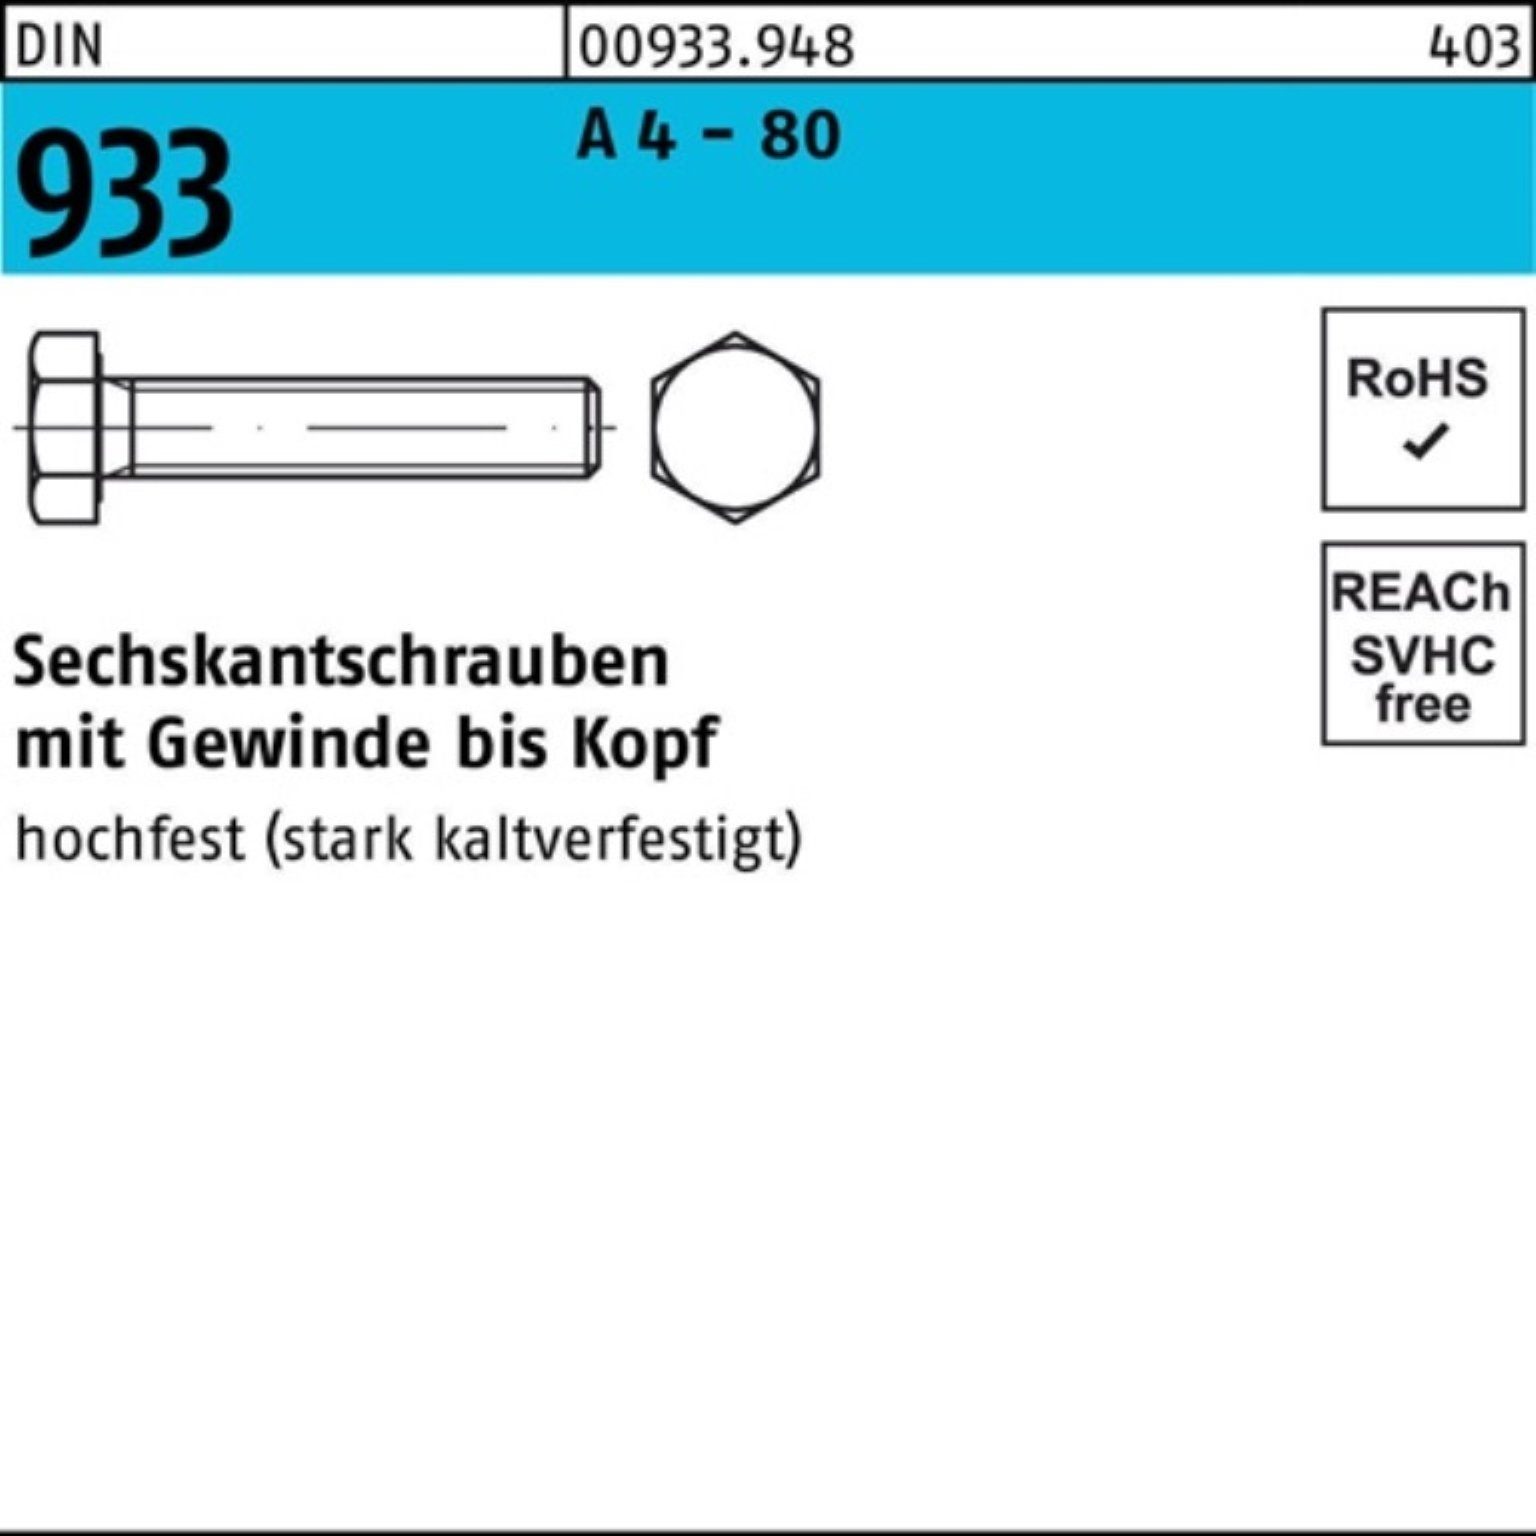 Reyher Sechskantschraube 100er Pack Sechskantschraube DIN 933 VG M16x 120 A 4 - 80 1 Stück DIN